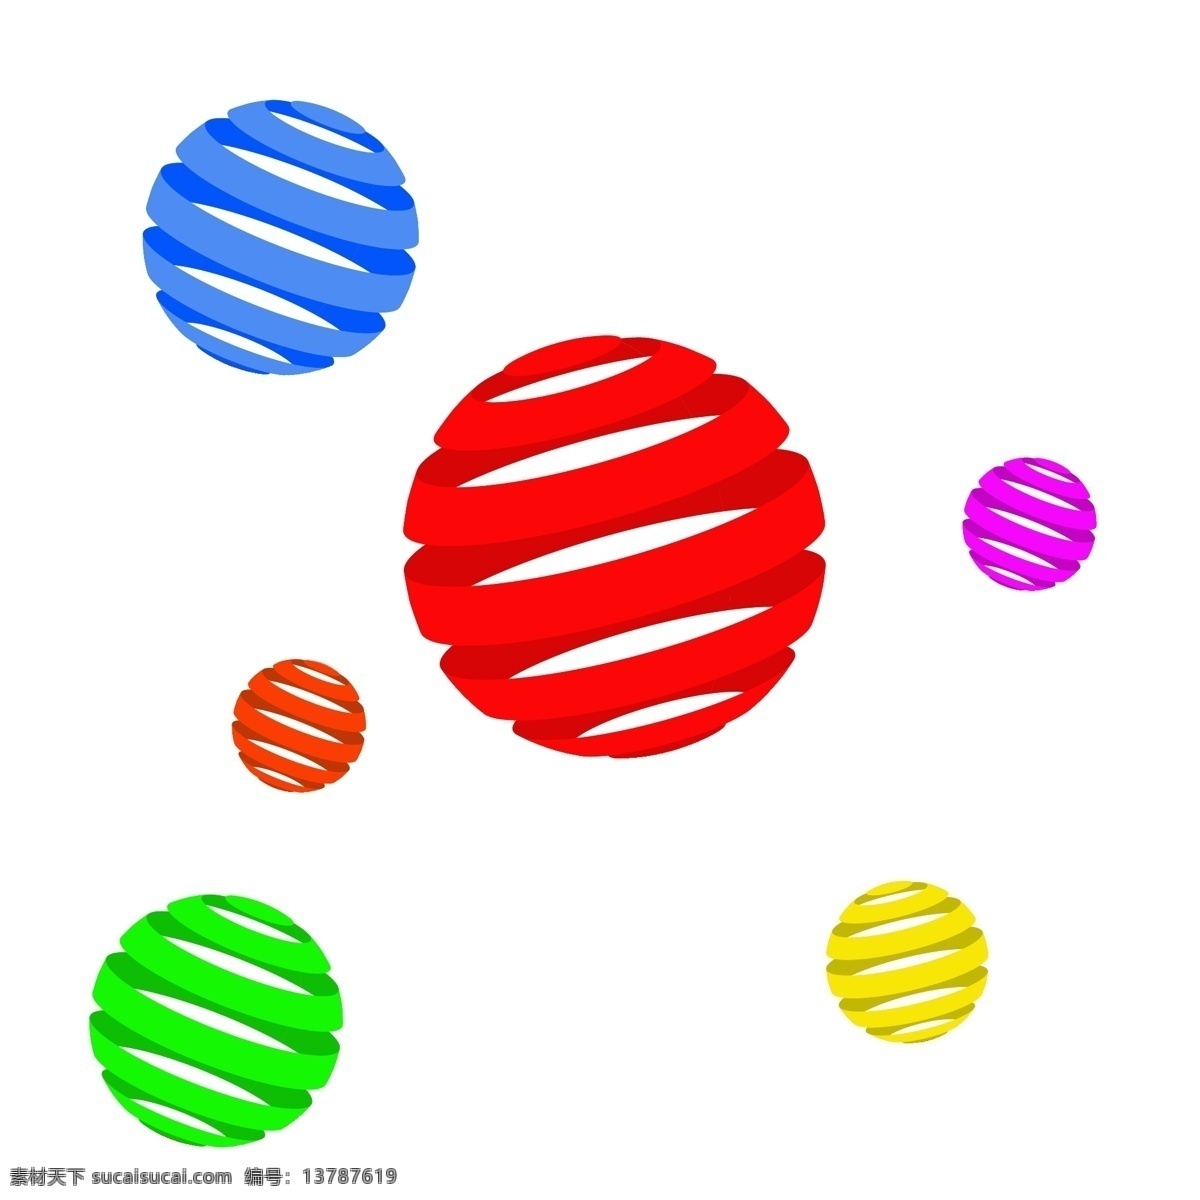 圆形 球体 漂浮 球 蓝色 红色 橙色 绿色 黄色